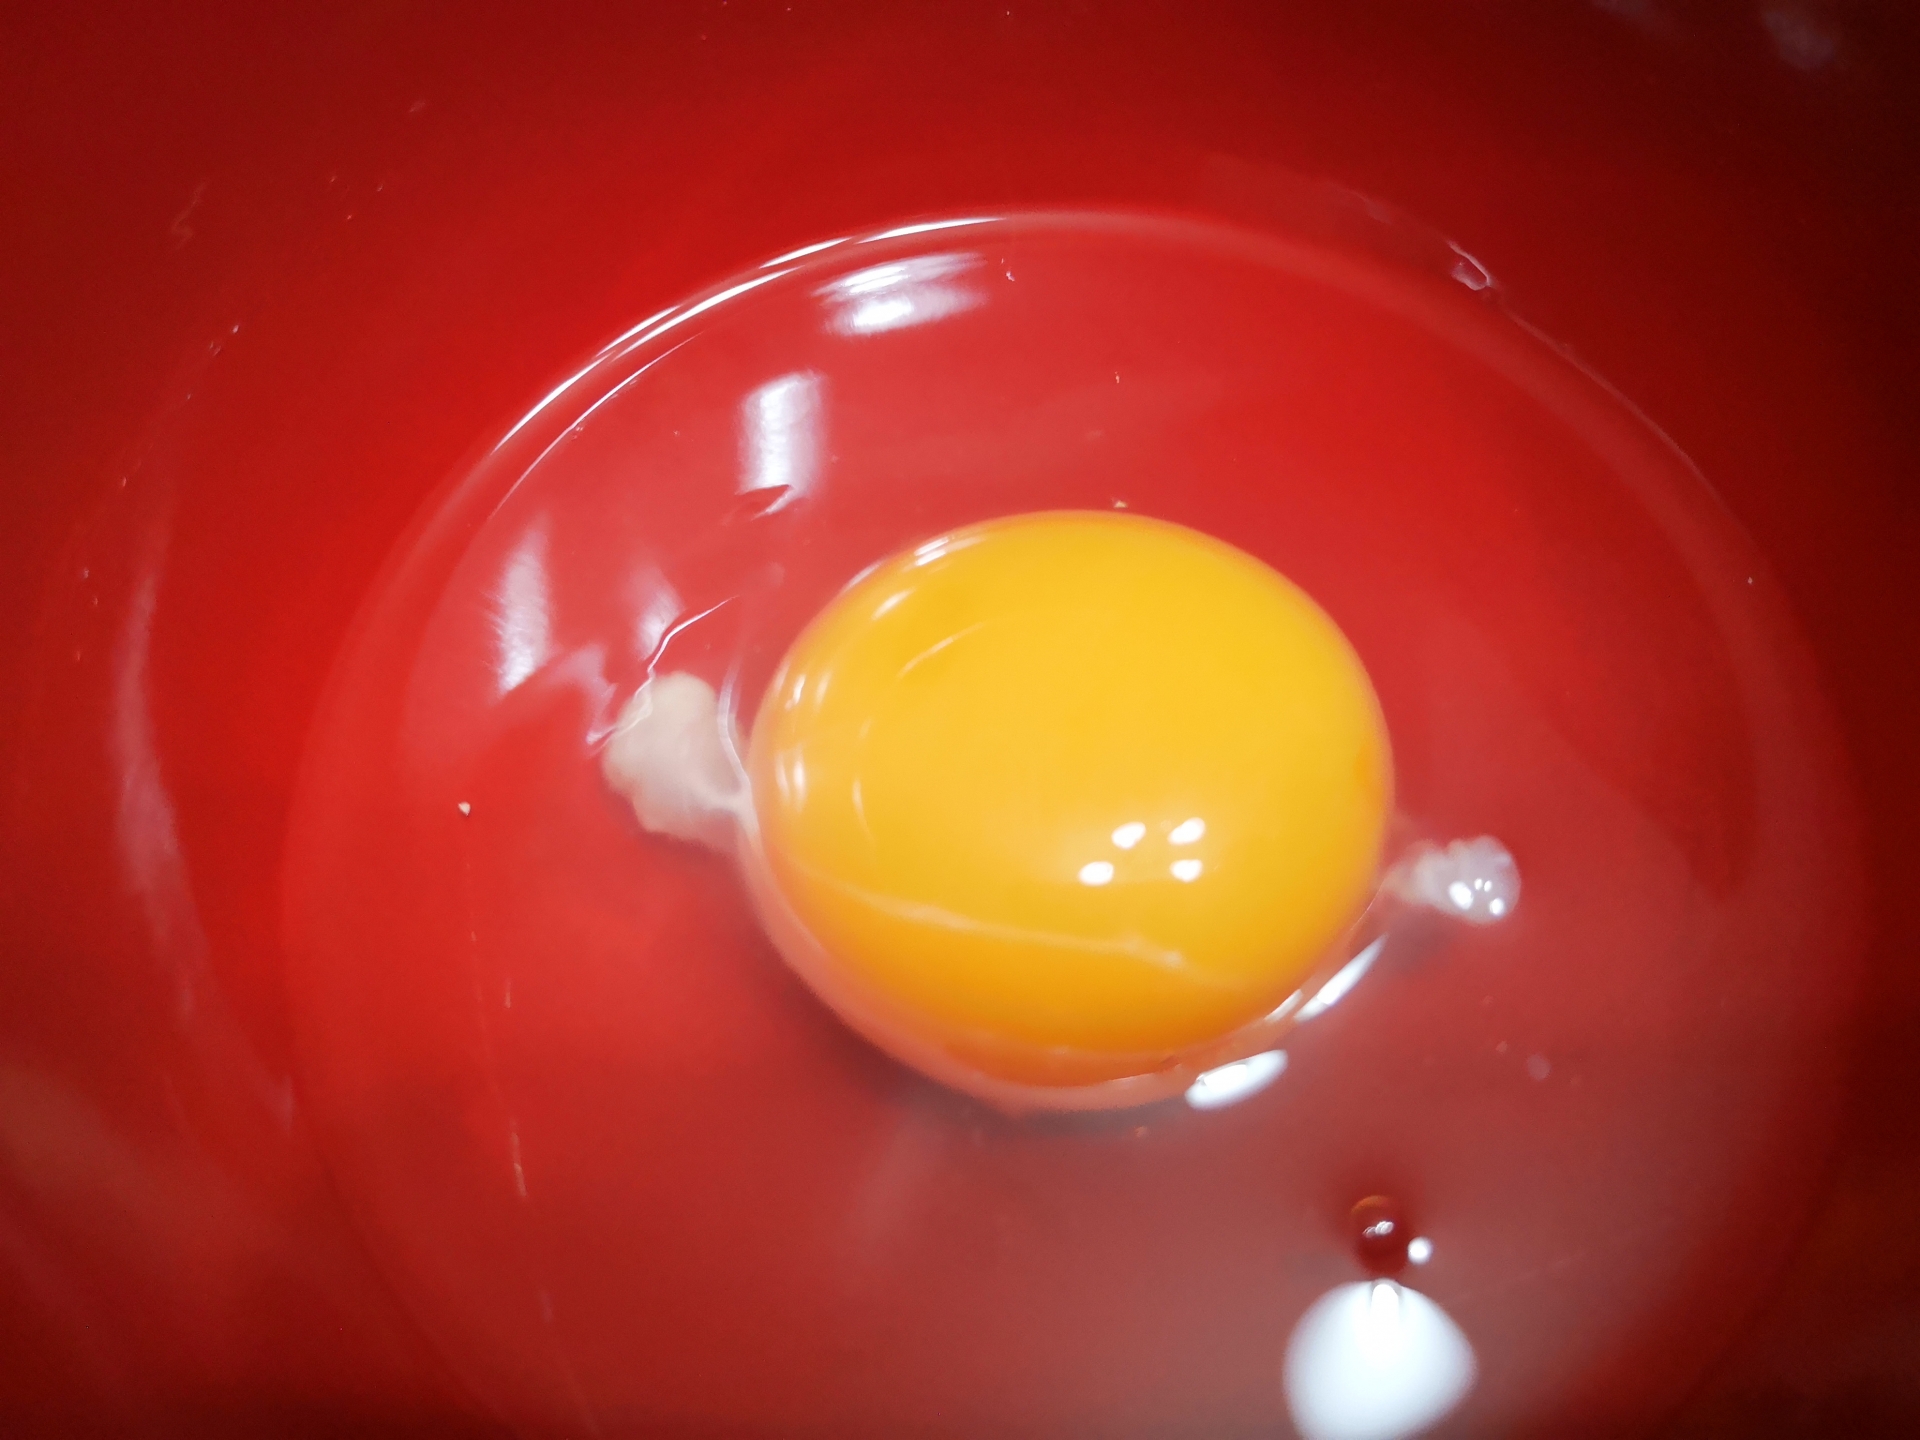 卵のカラザ、卵黄に付いている白いヒモのようなものですが、取りますか、食べますか。Twitterでは話題になっていました